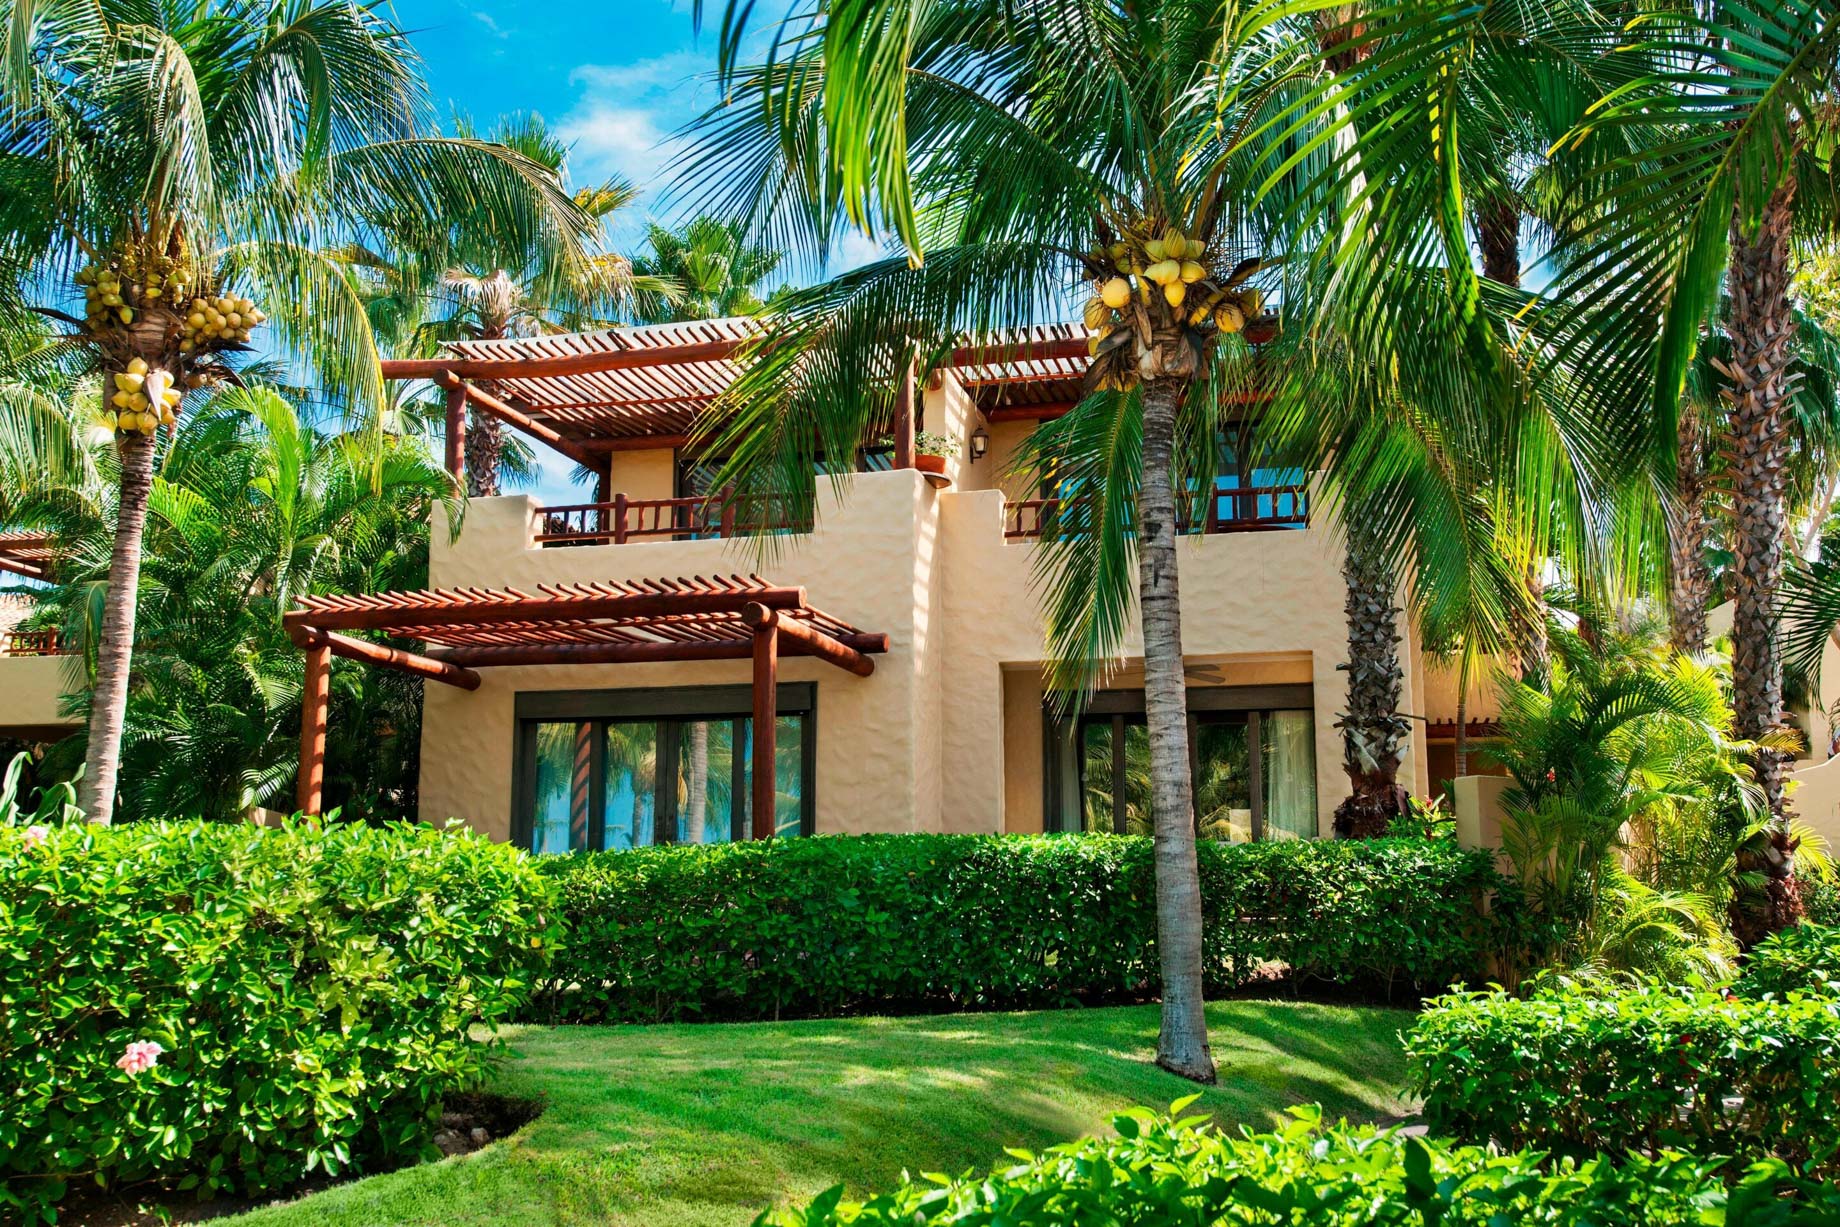 The St. Regis Punta Mita Resort – Nayarit, Mexico – Resort Villa Exterior